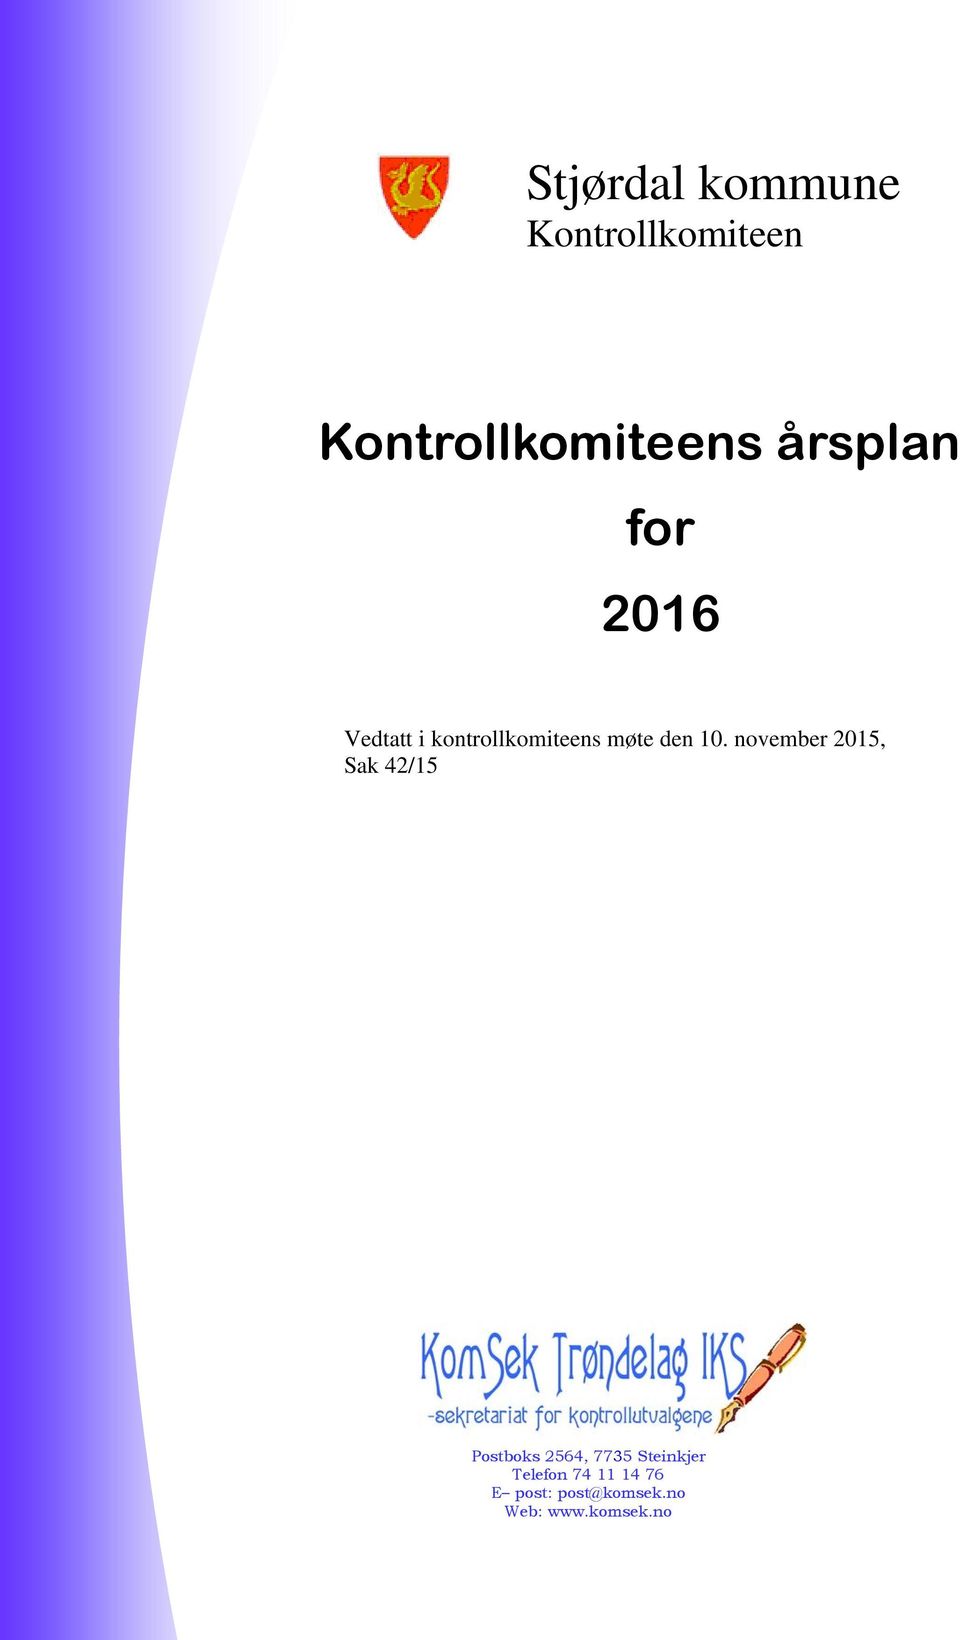 november 2015, Sak 42/15 Postboks 2564, 7735 Steinkjer